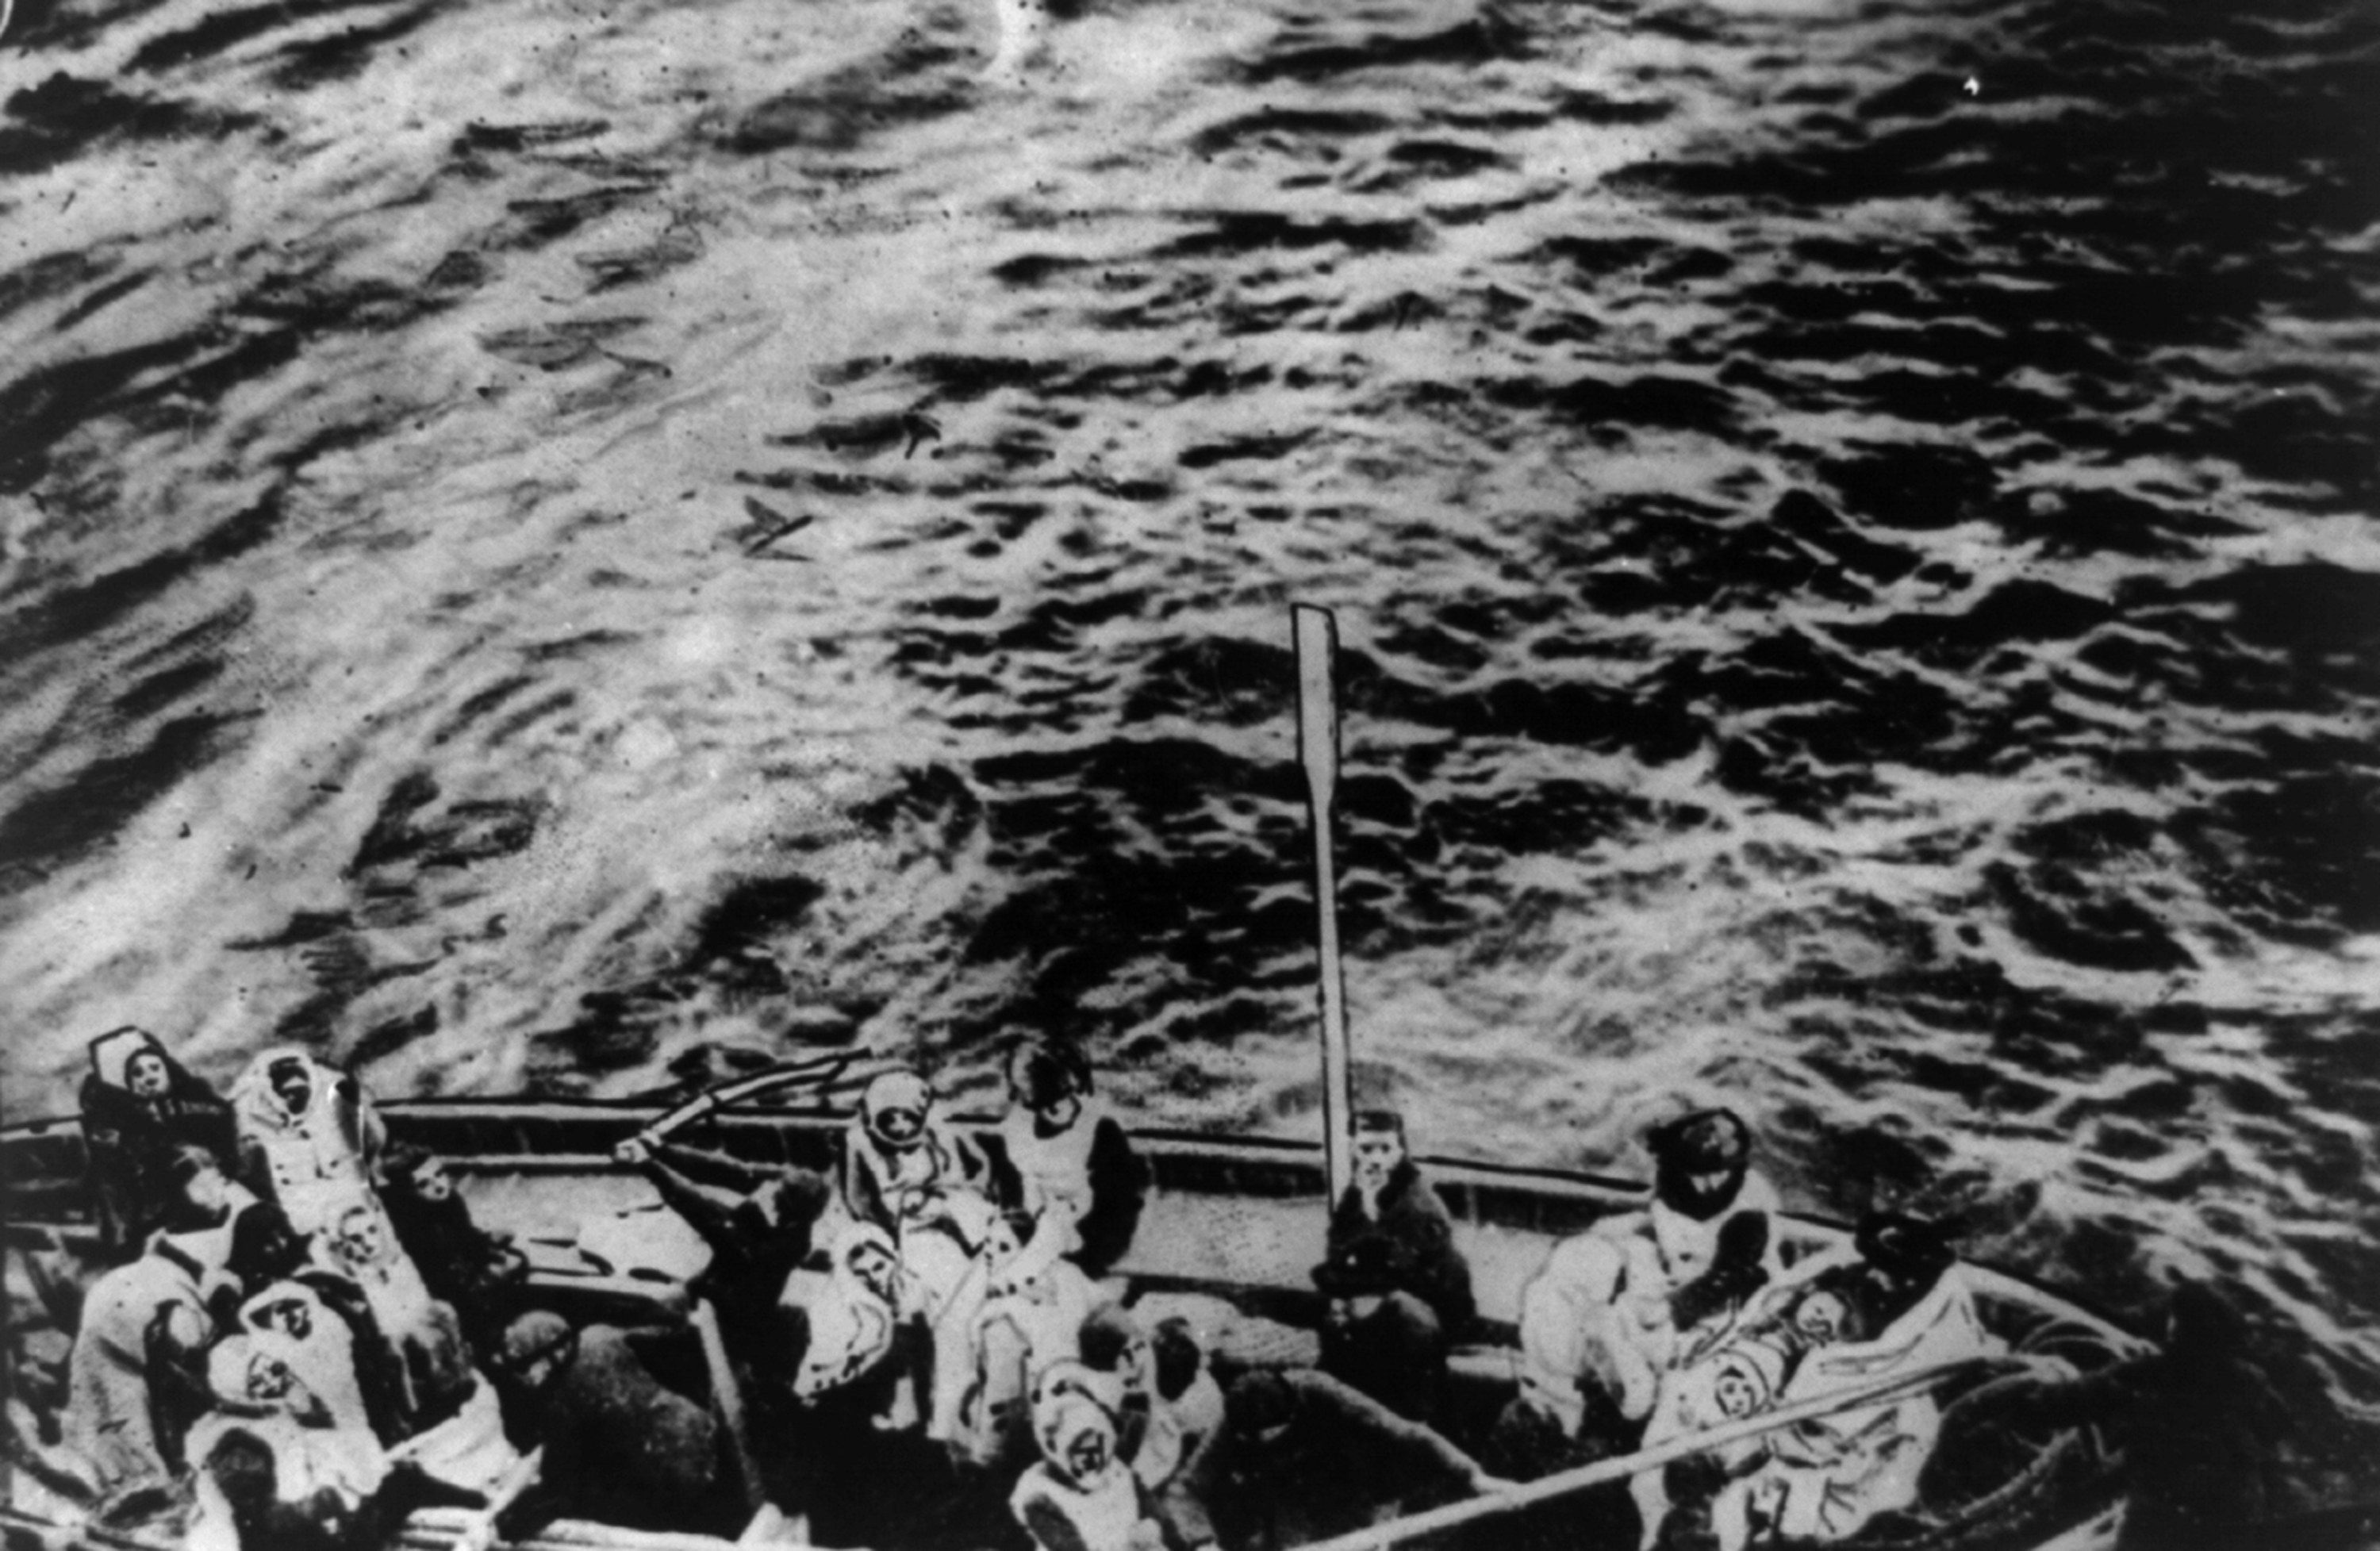 Титаник истории выживших